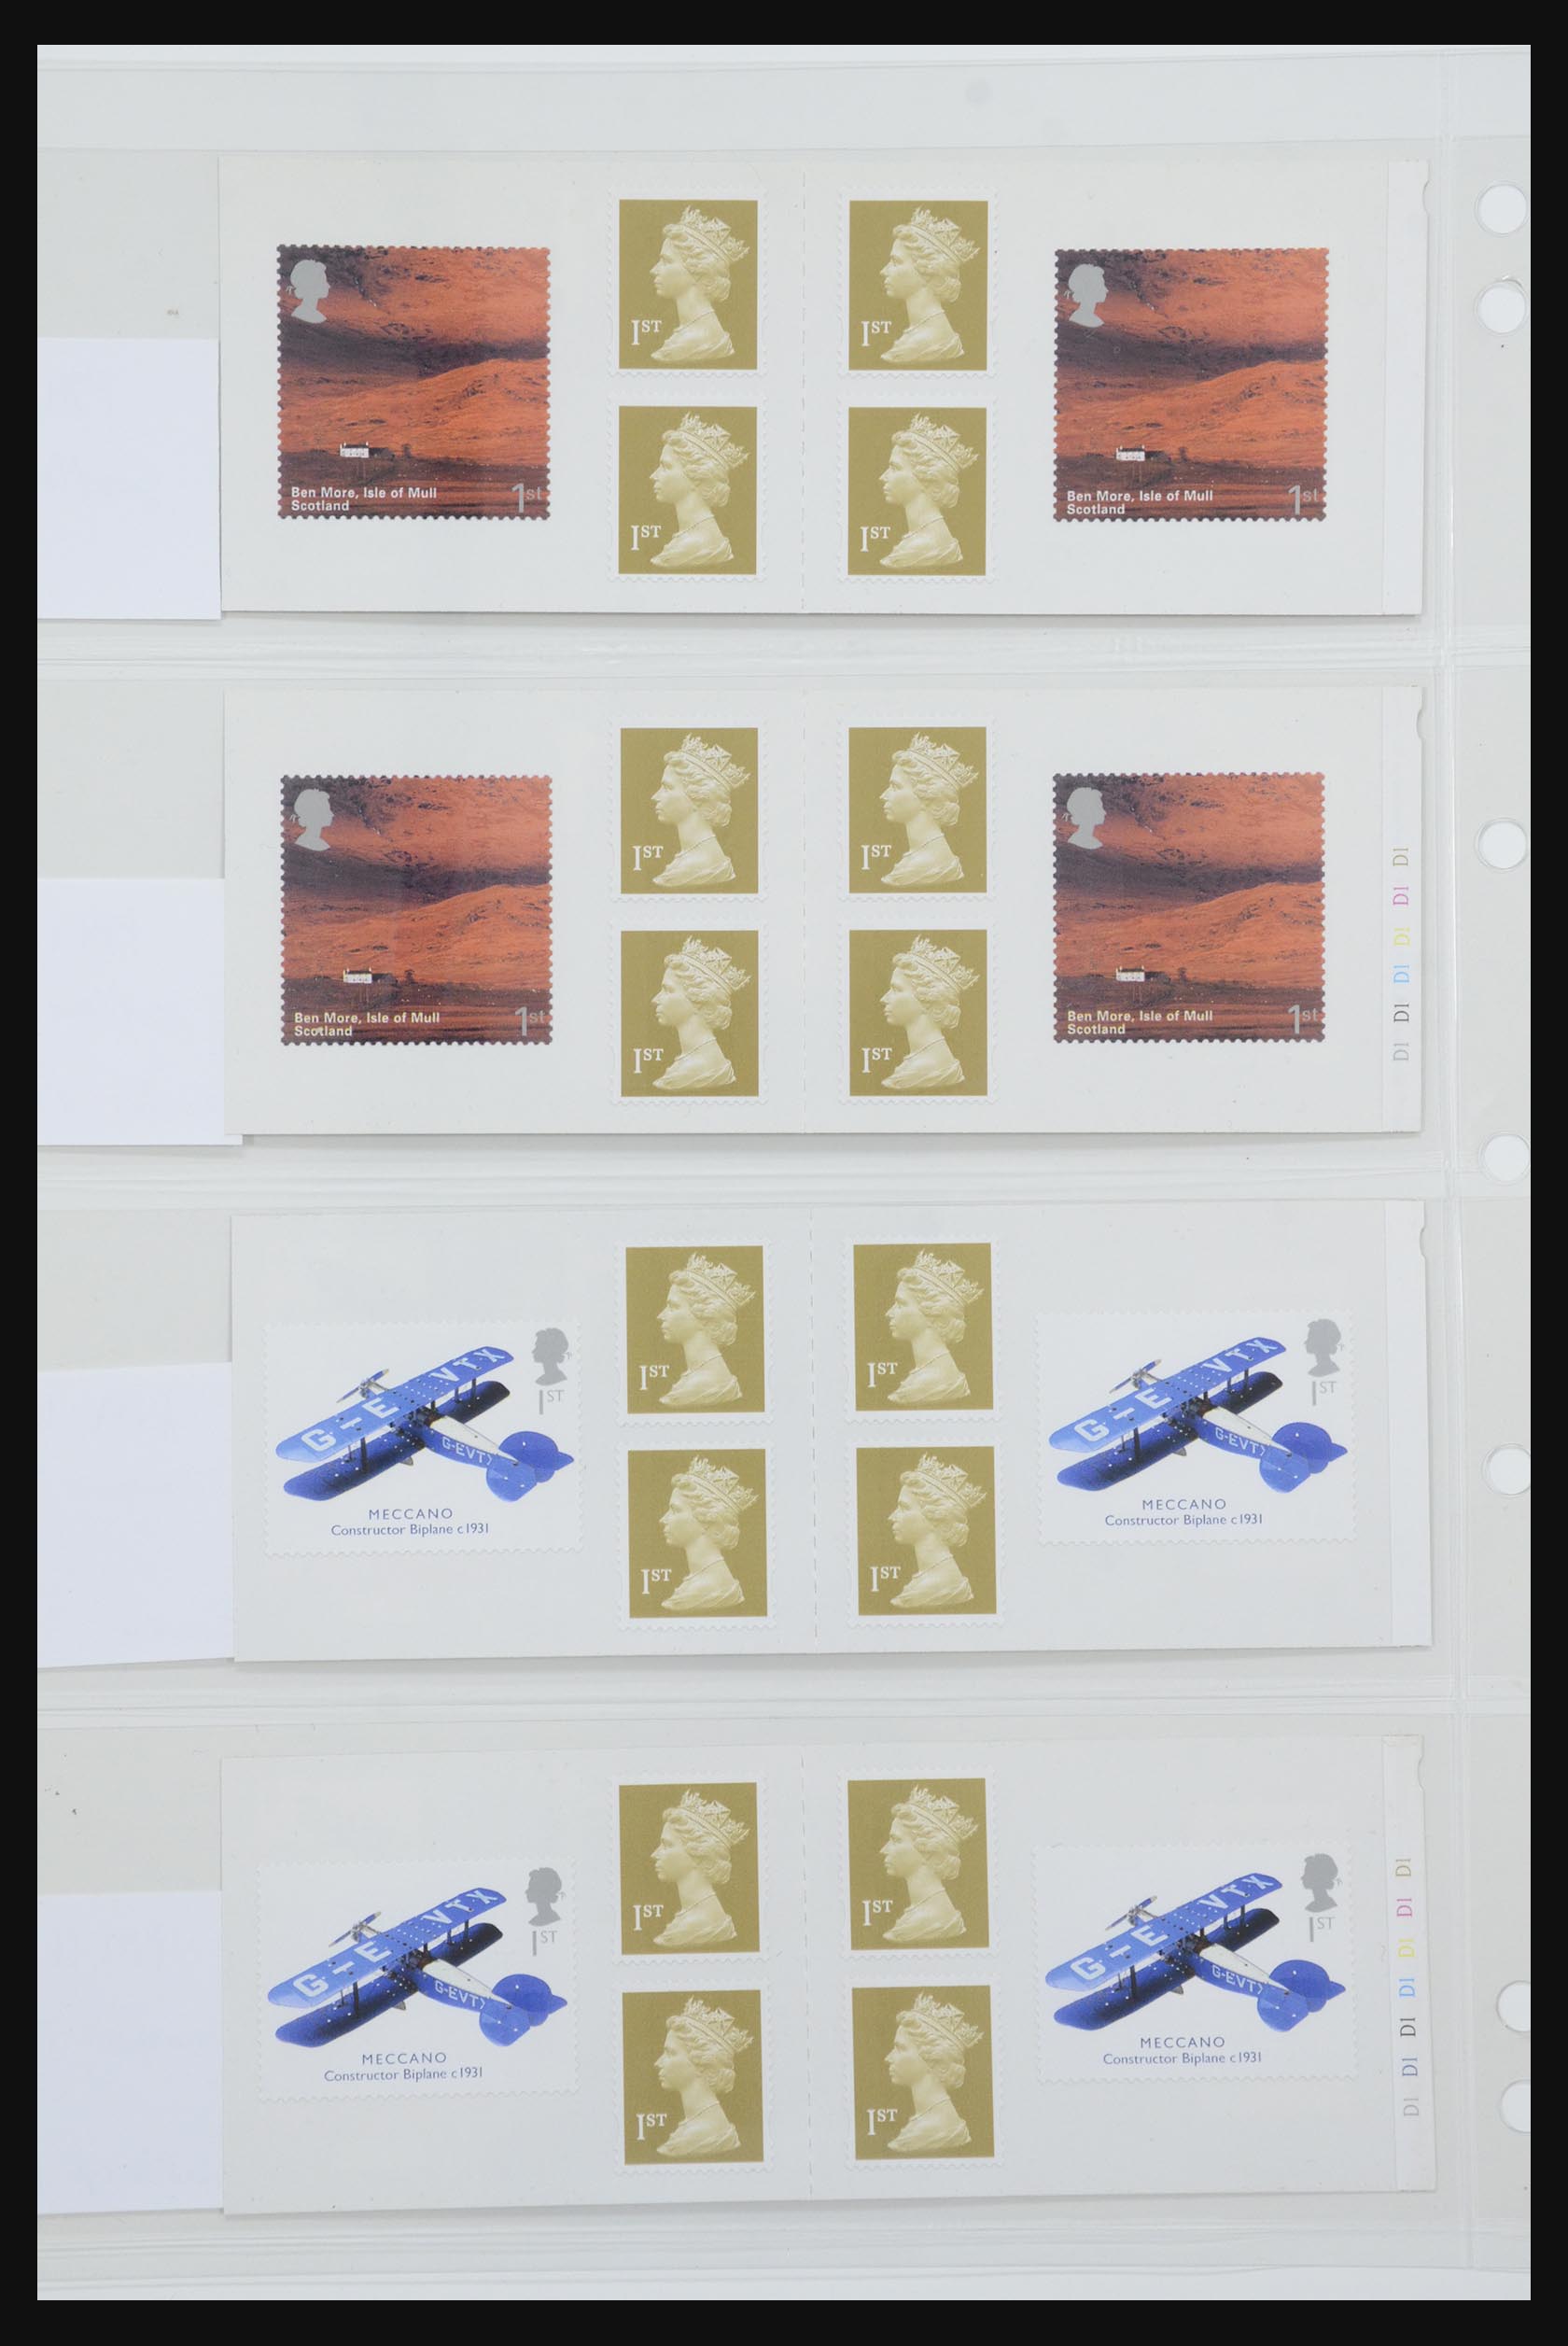 31959 372 - 31959 Engeland postzegelboekjes 1987-2016!!